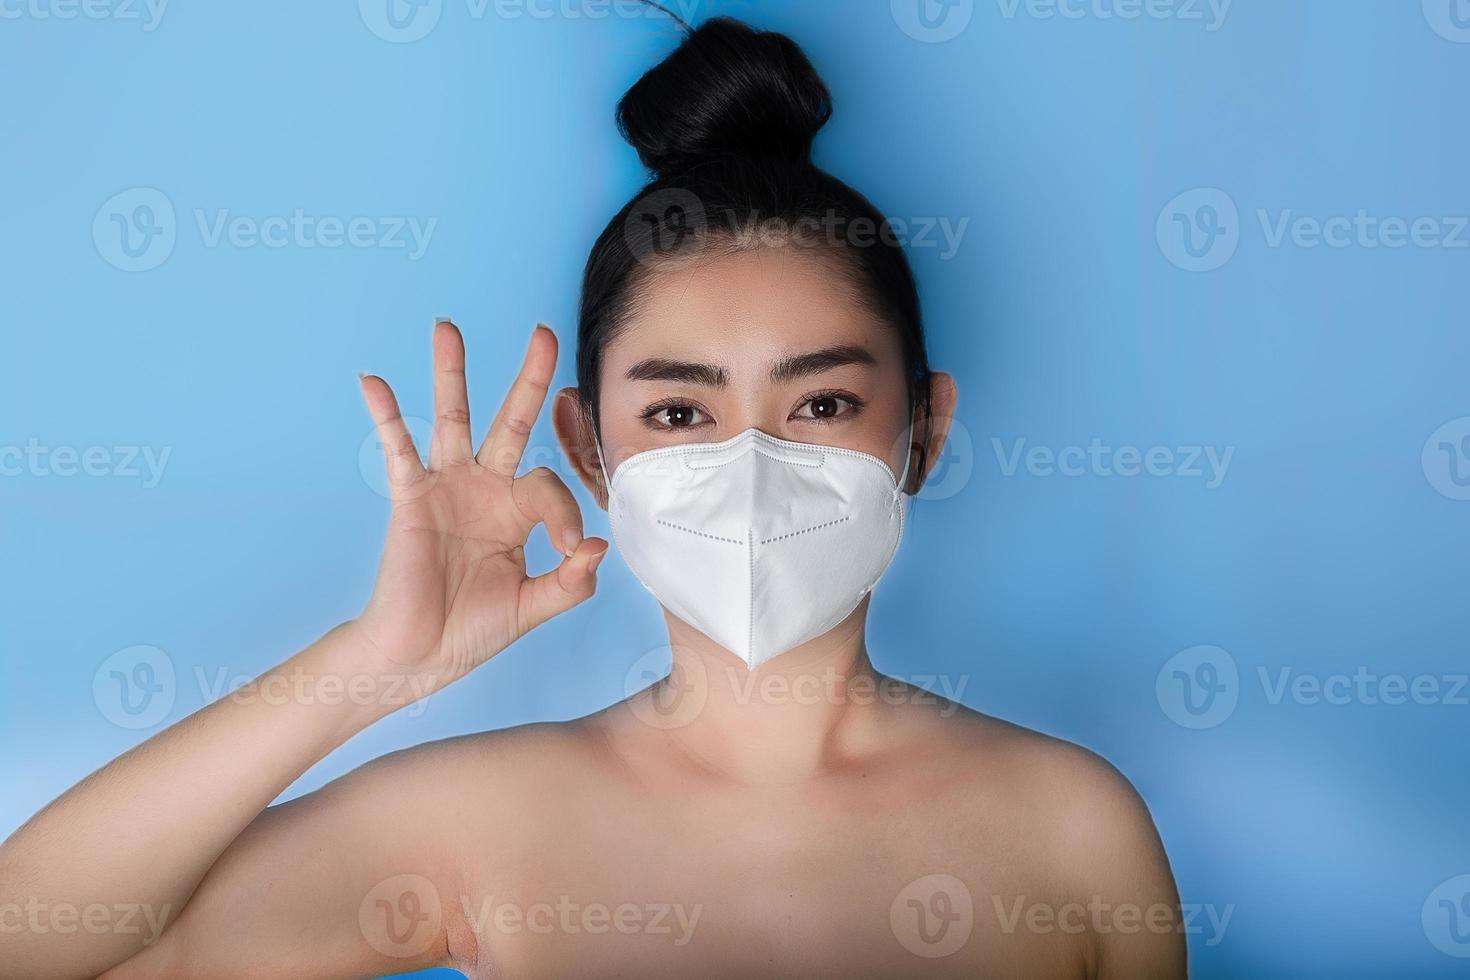 närbild av en kvinna som sätter på sig en respirator n95-mask för att skydda mot luftburna luftvägssjukdomar som influensa covid-19 corona pm2.5 damm och smog, kvinnlig tummen upp gest med handen visar ok tecken foto